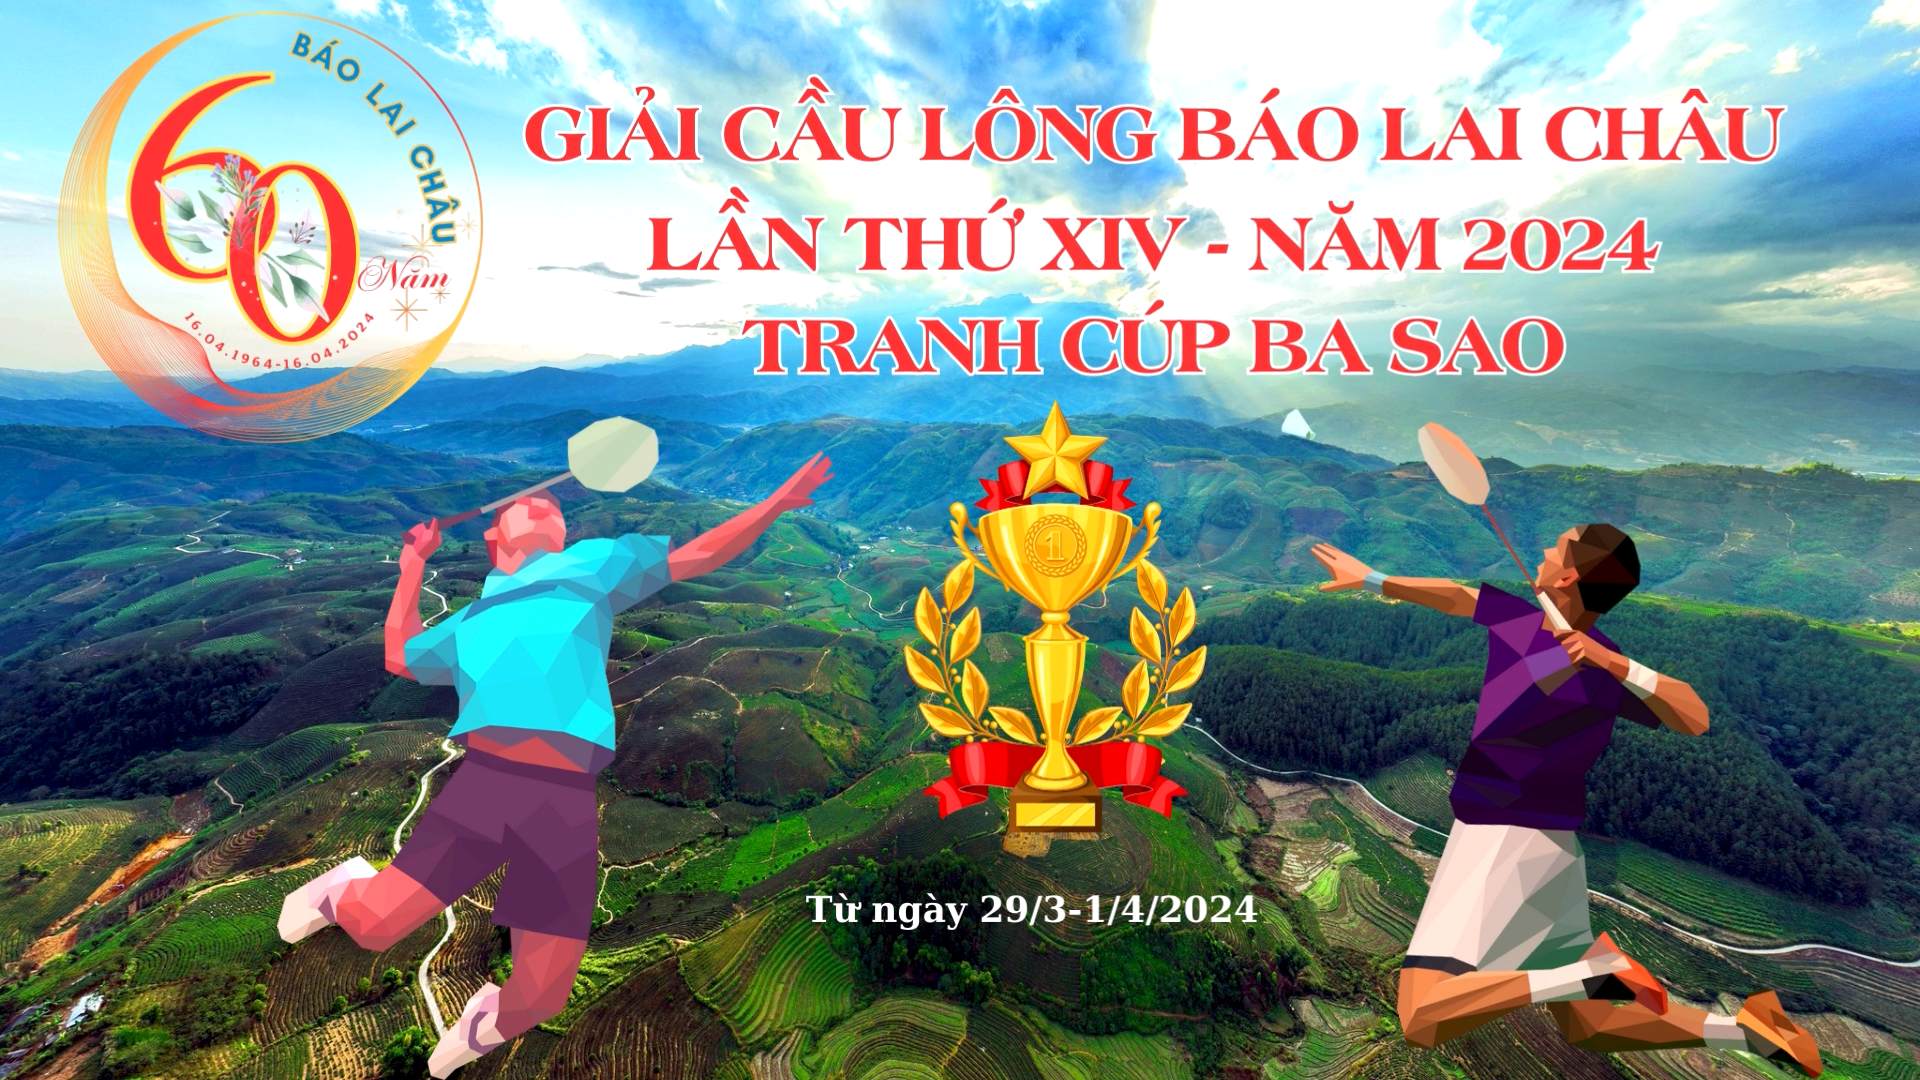 Giải cầu lông Báo Lai Châu lần thứ XIV, năm 2024 - Tranh Cúp Ba Sao